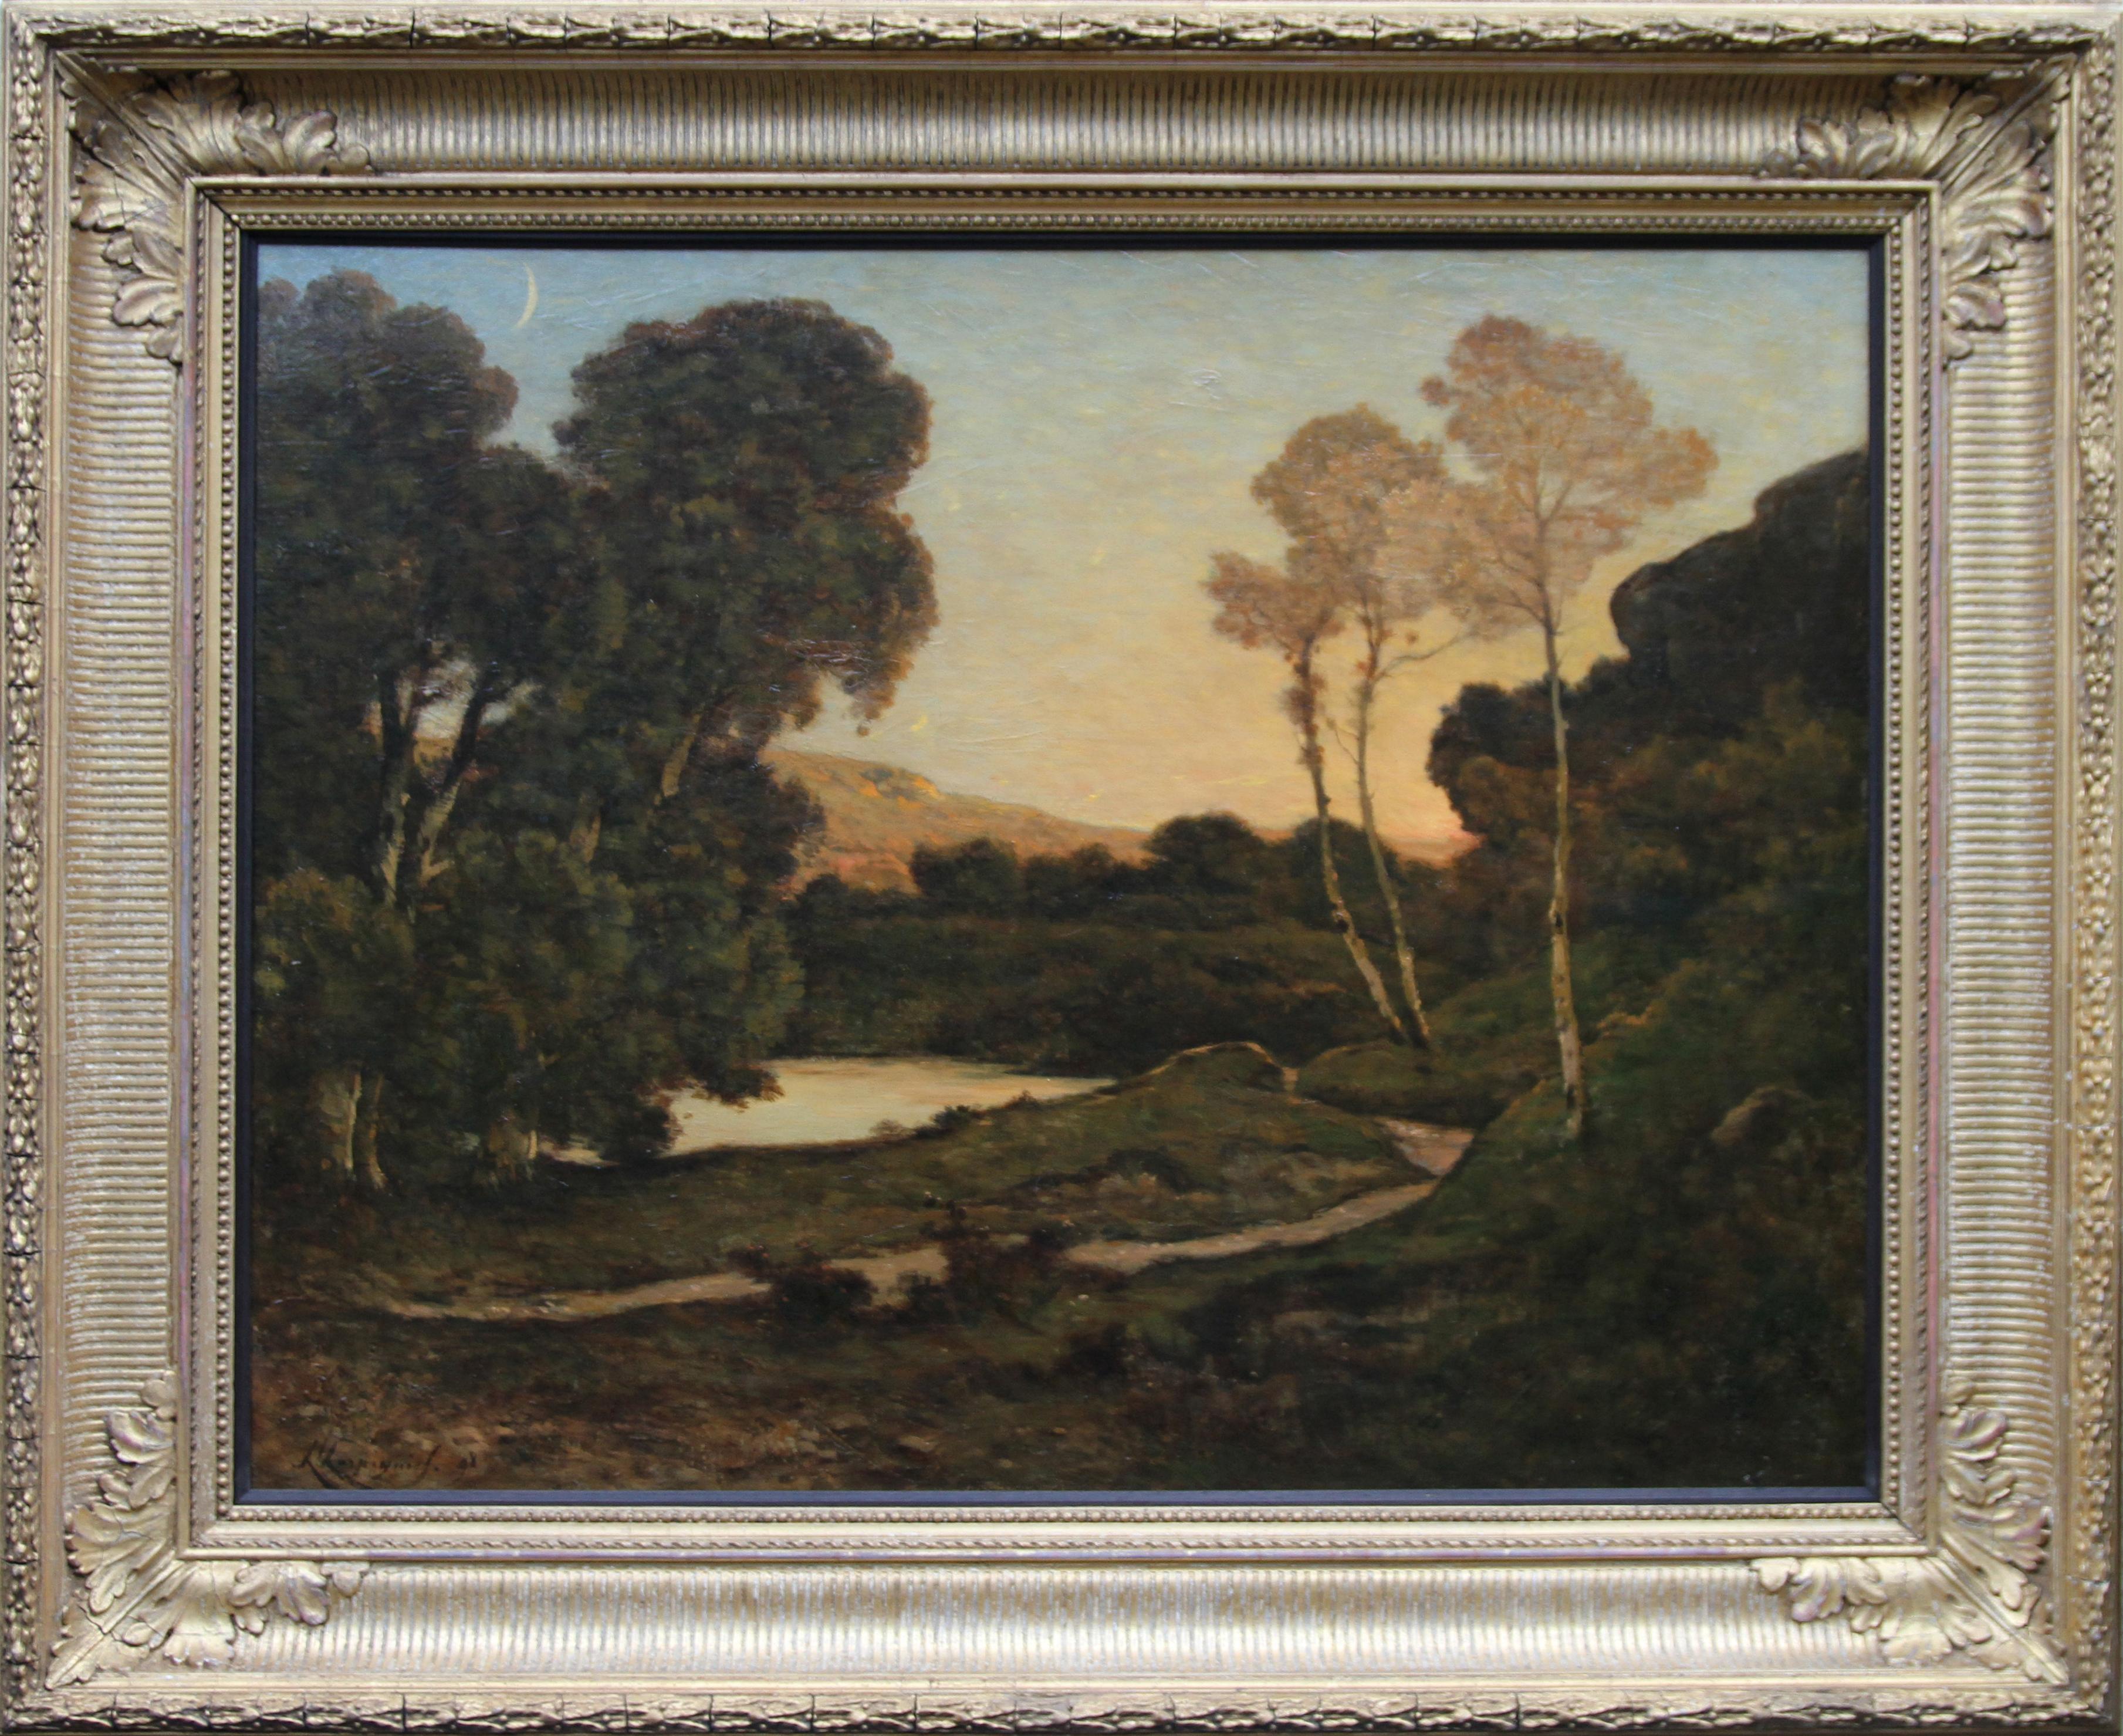 Sunset Landscape- French 19th century Barbizon art river landscape oil painting  - Black Landscape Painting by Henri Joseph Harpignies